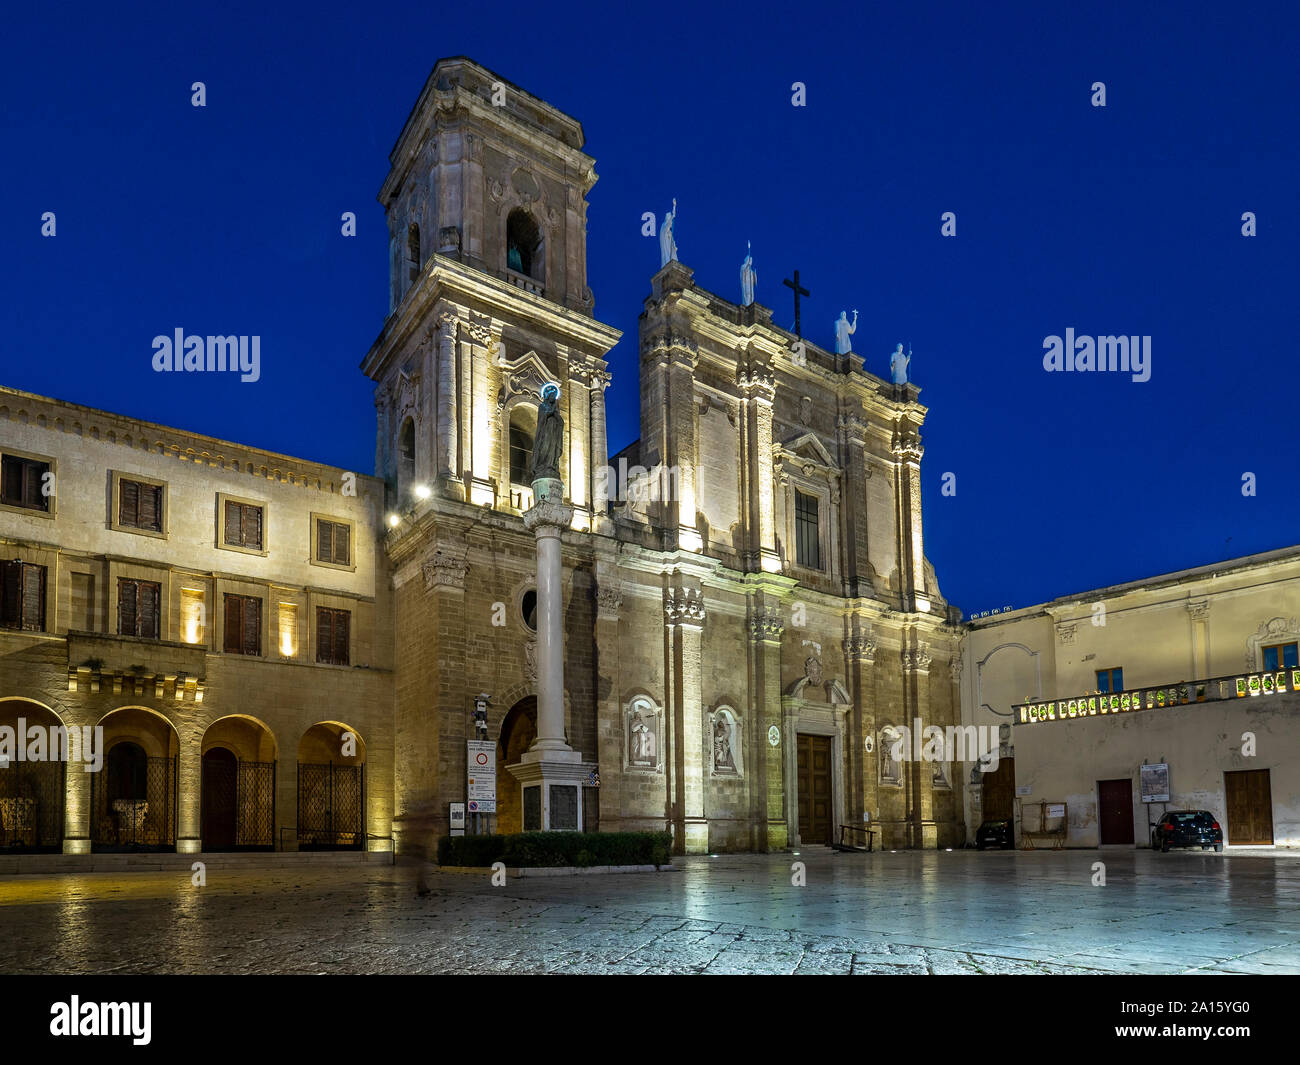 Fachada de la catedral iluminada en Brindisi contra el azul claro del cielo en la noche Foto de stock